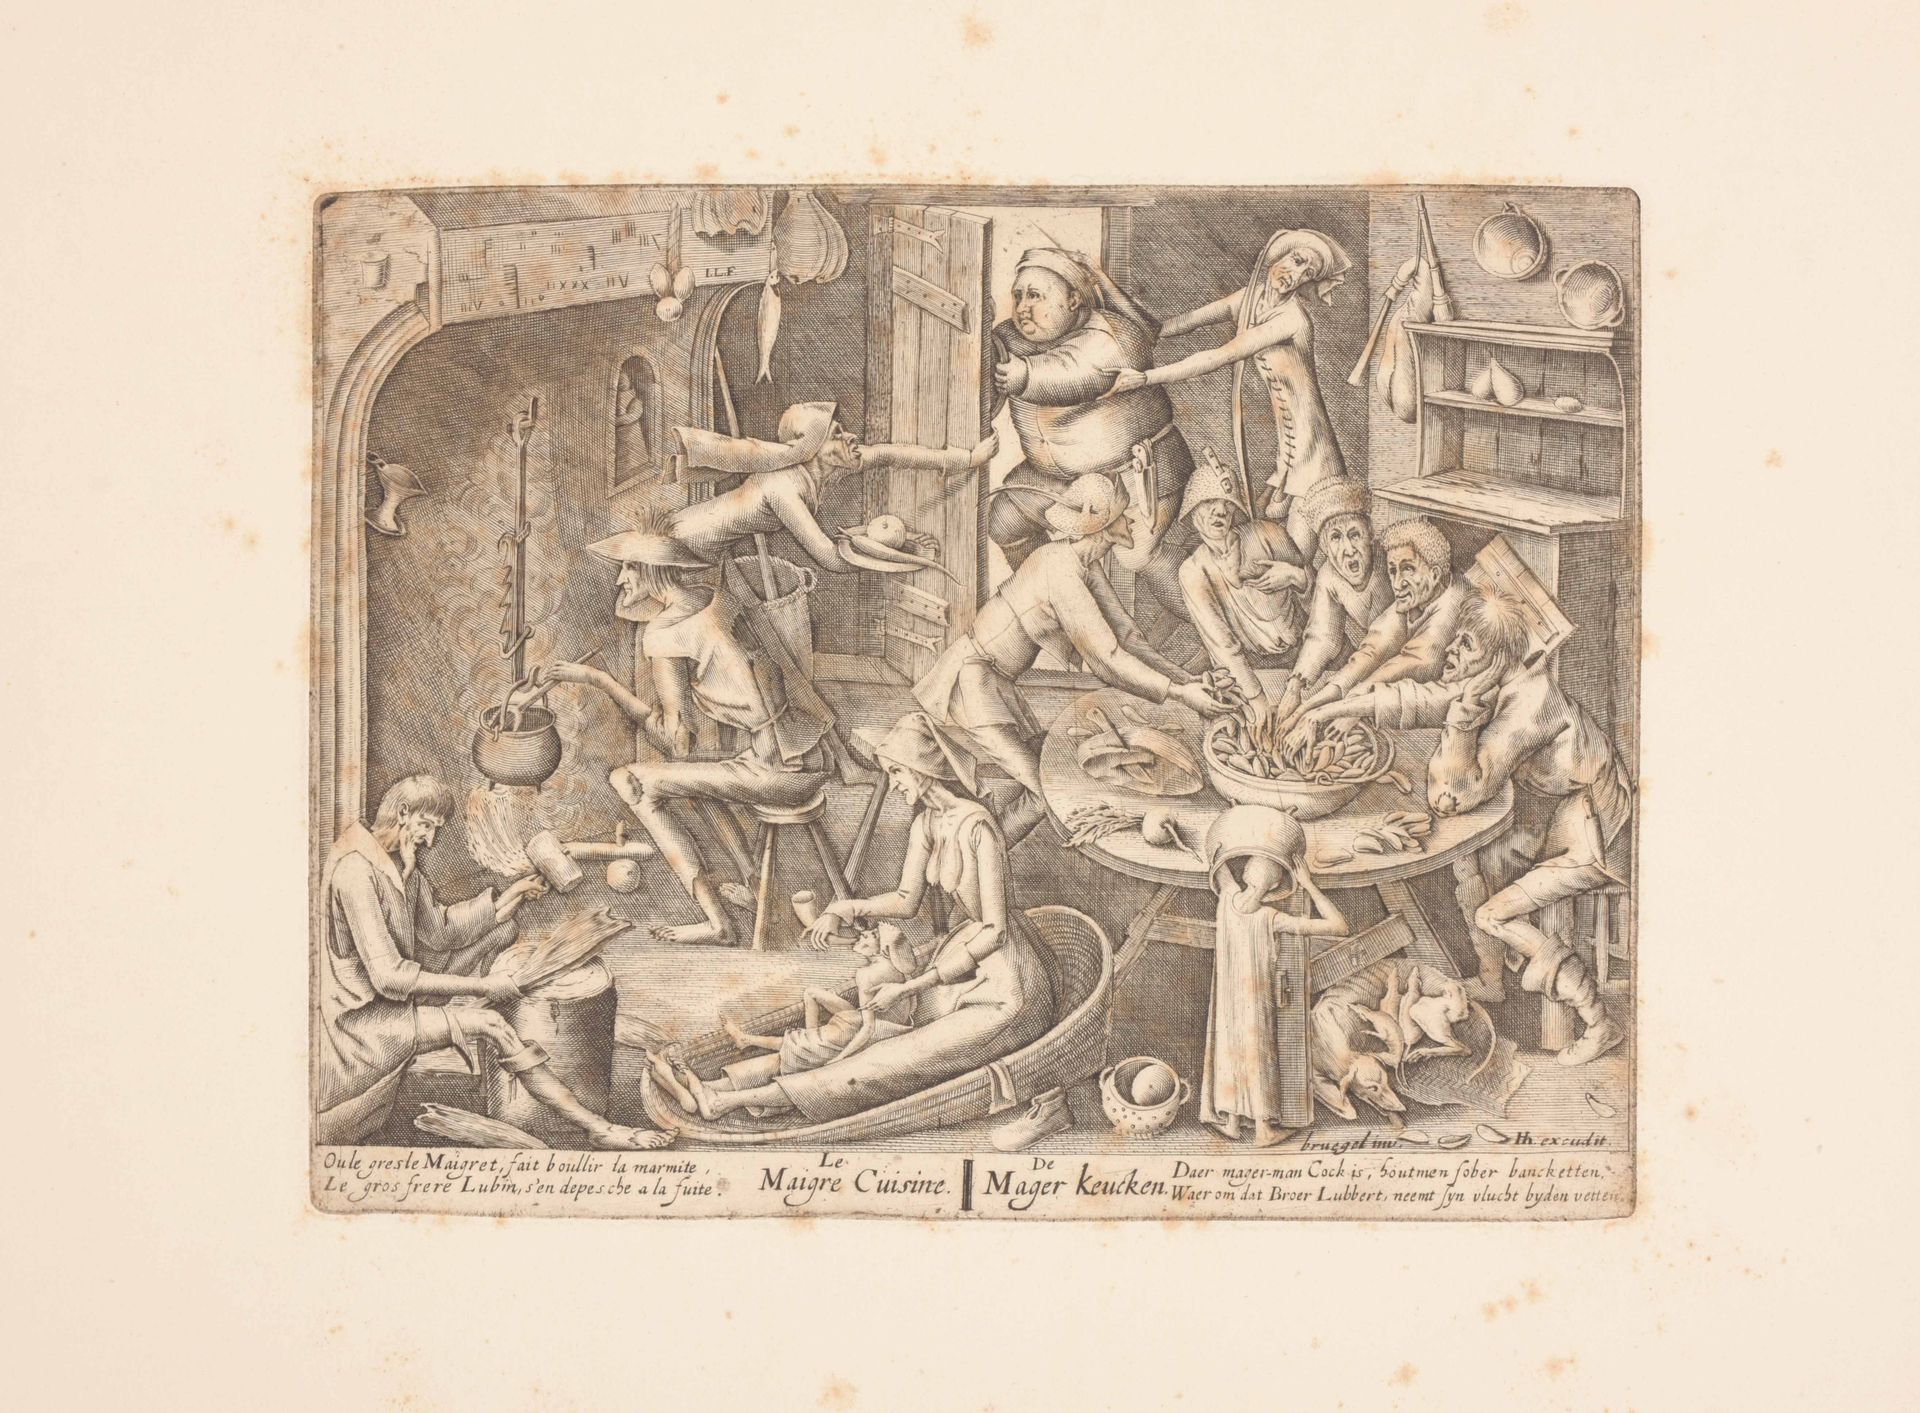 [BRUEGEL, Pieter after (ca. 1525- ca. 1569] The poor kitchen / The rich kitchen
&hellip;